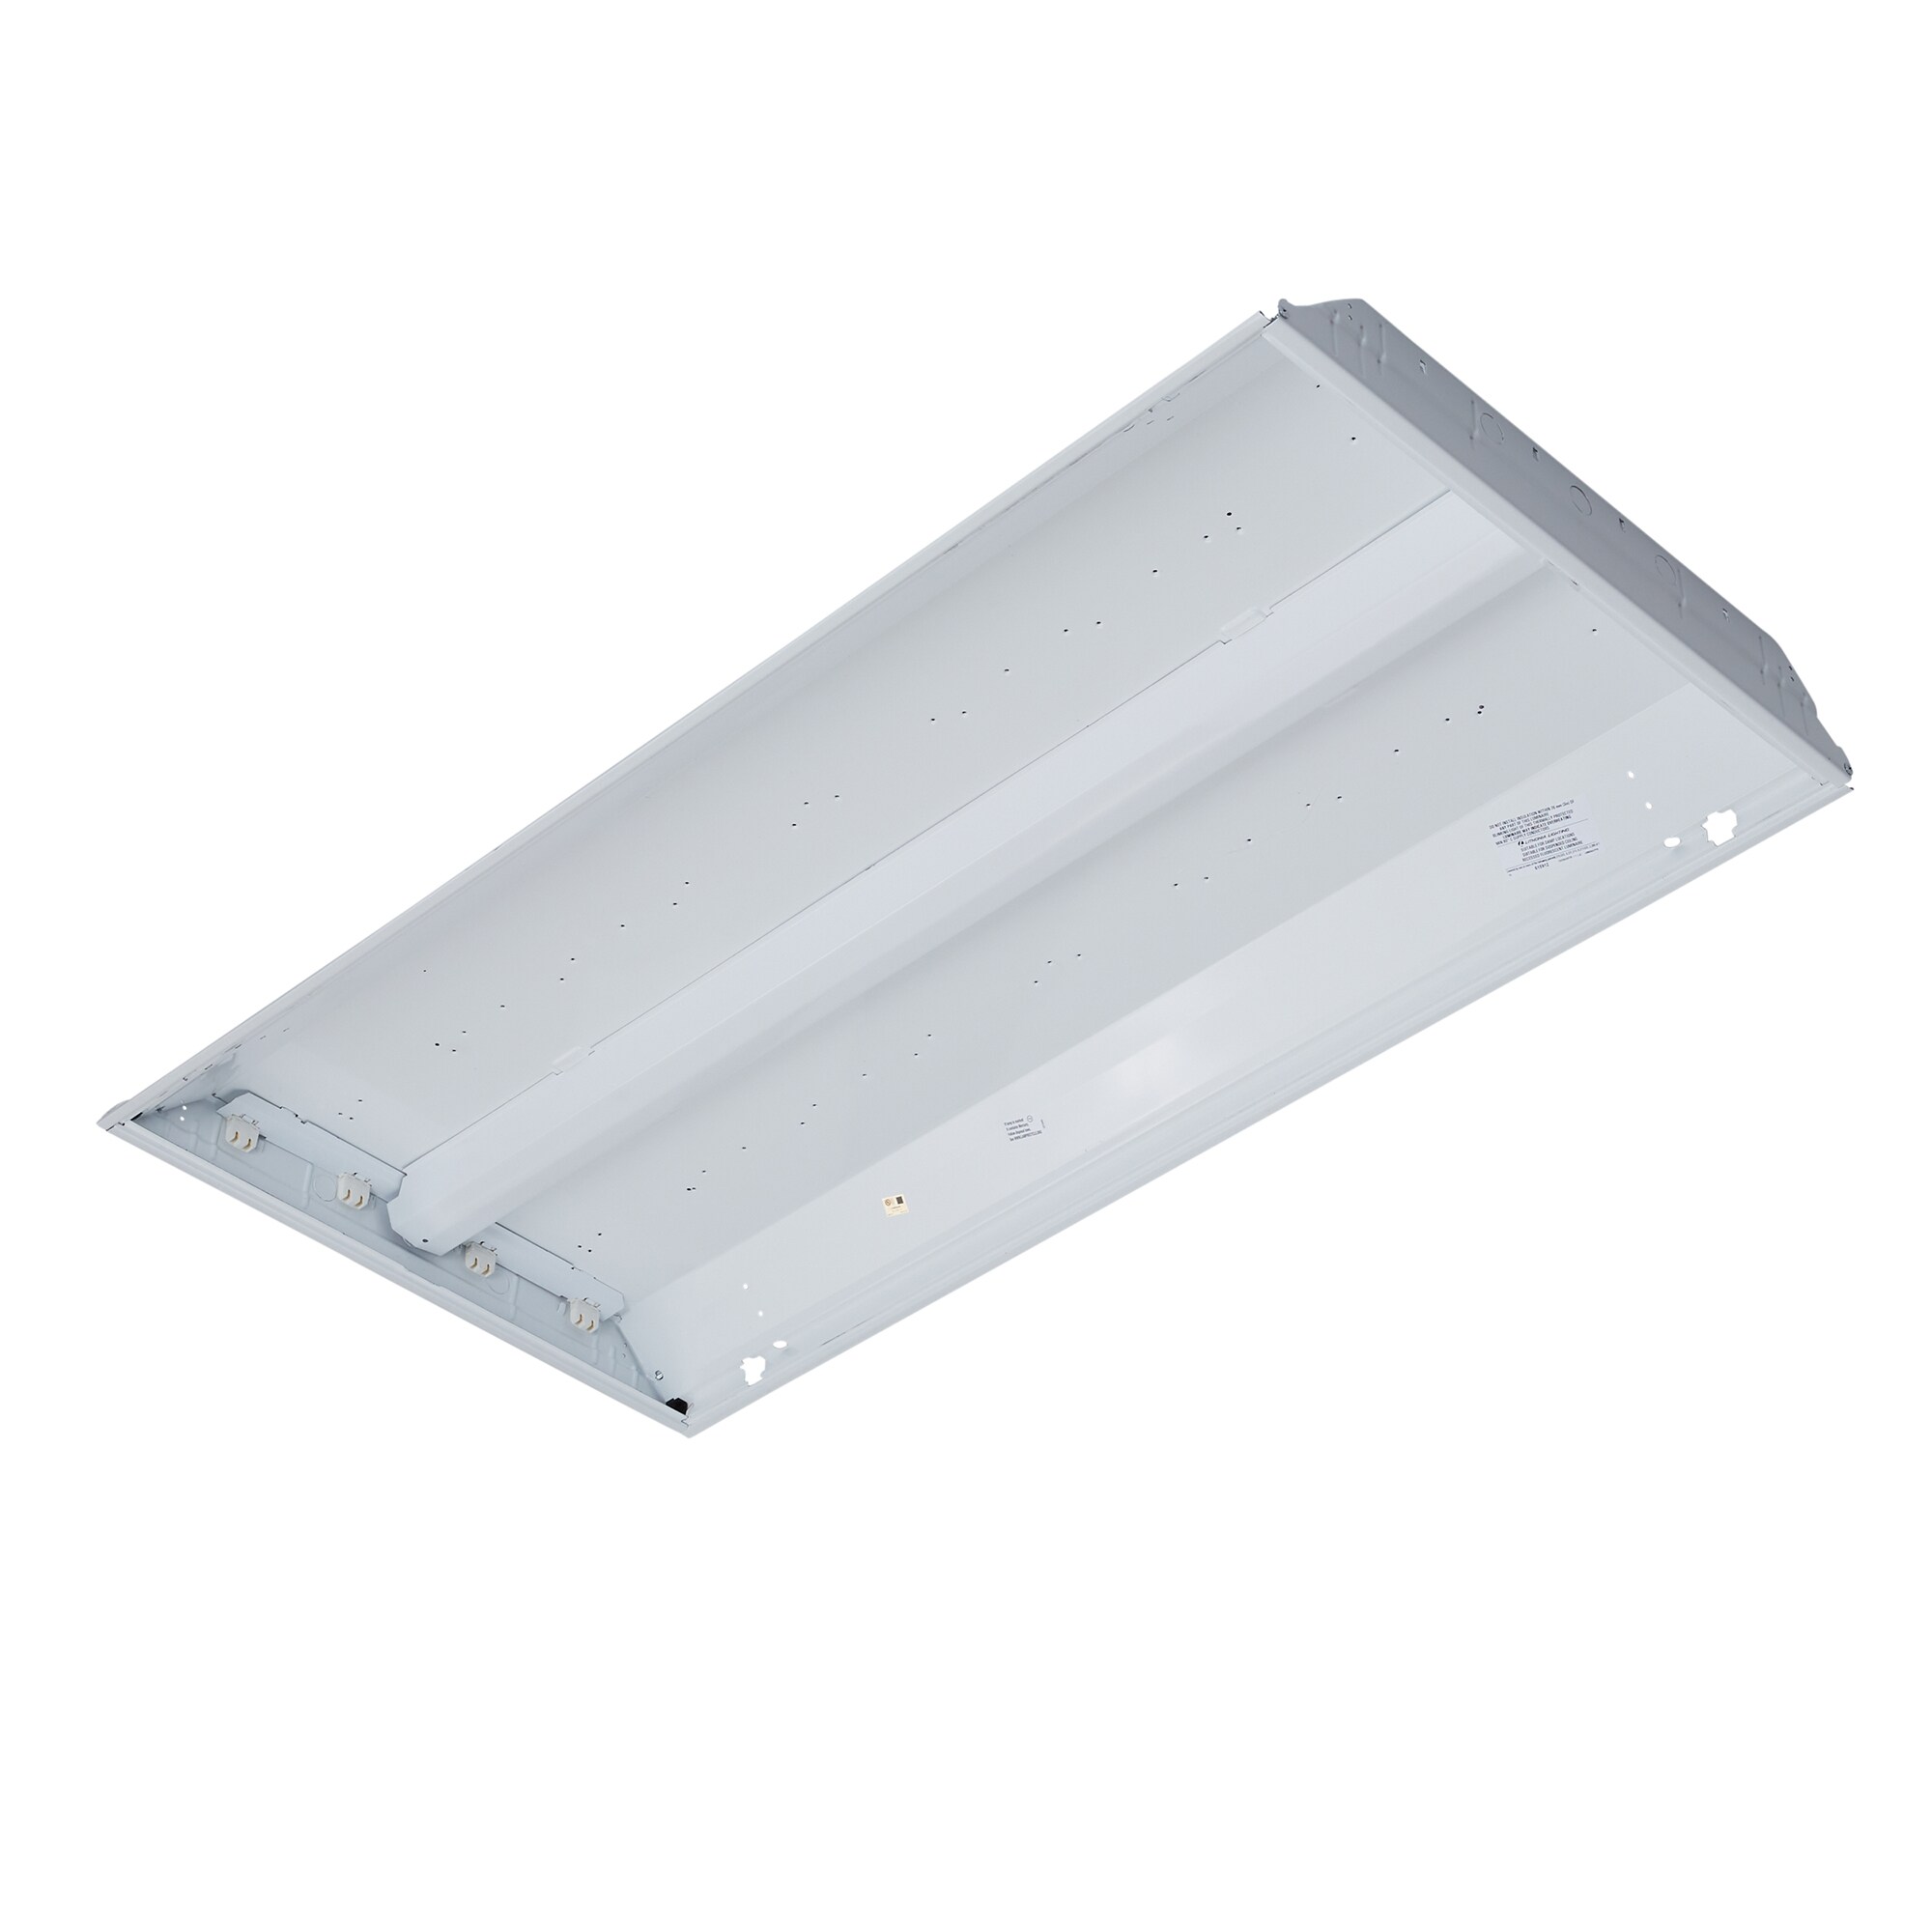 Lithonia Lighting 3-light White Multi-volt Fluorescent Troffer 2 X 4 Ceiling for sale online 